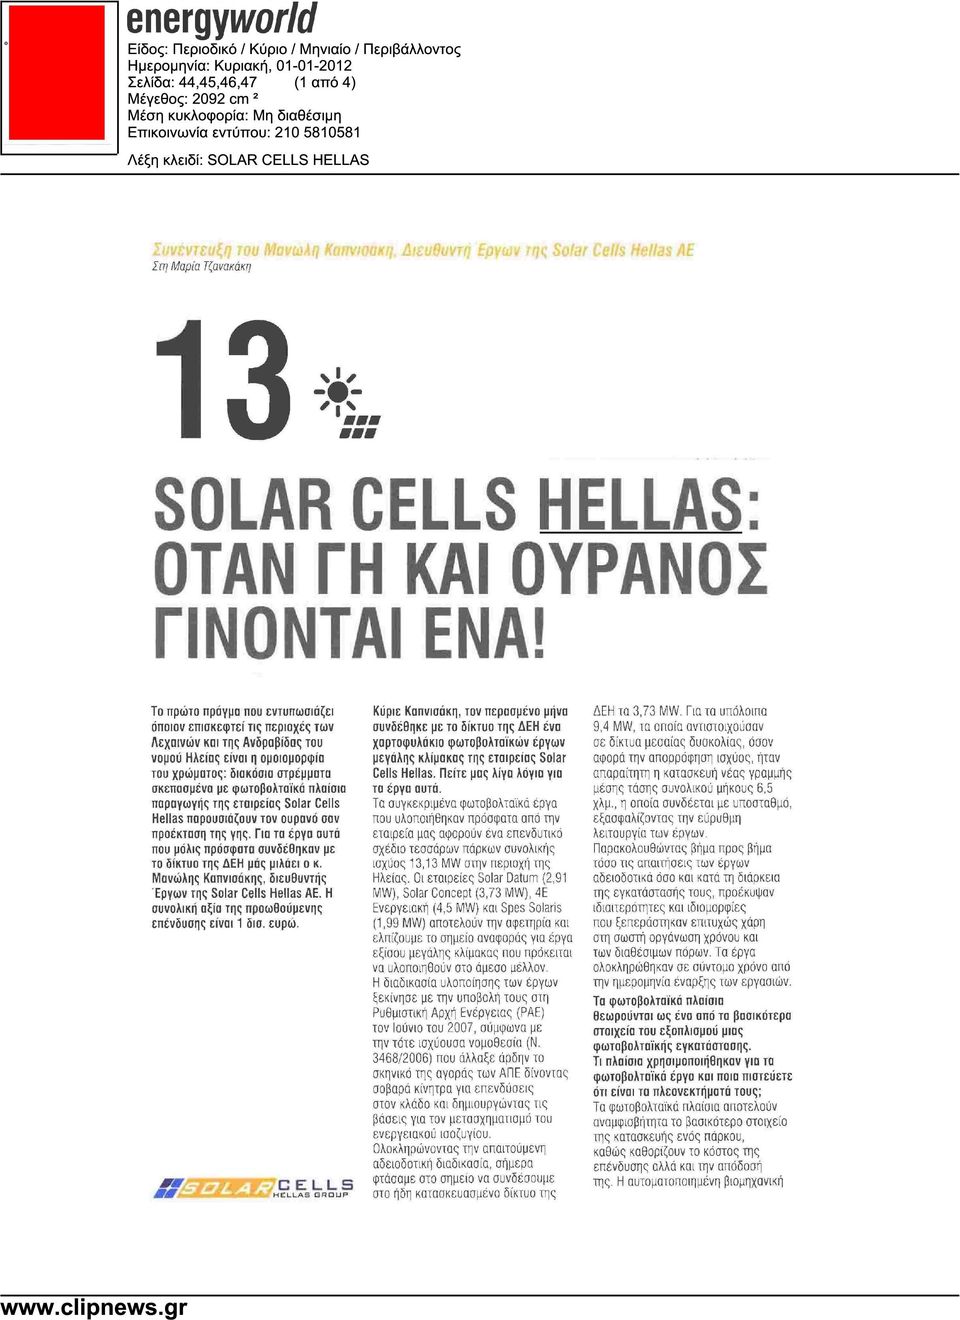 πλαίσια παραγωγής της εταιρείας Solar Cells Hellas παρουσιάζουν τον ουρανό σαν προέκταση της γης. Για τα έργα αυτά που µόλις πρόσφατα συνδέθηκαν µε το δίκτυο της ΕΗ µάς µιλάει ο κ.